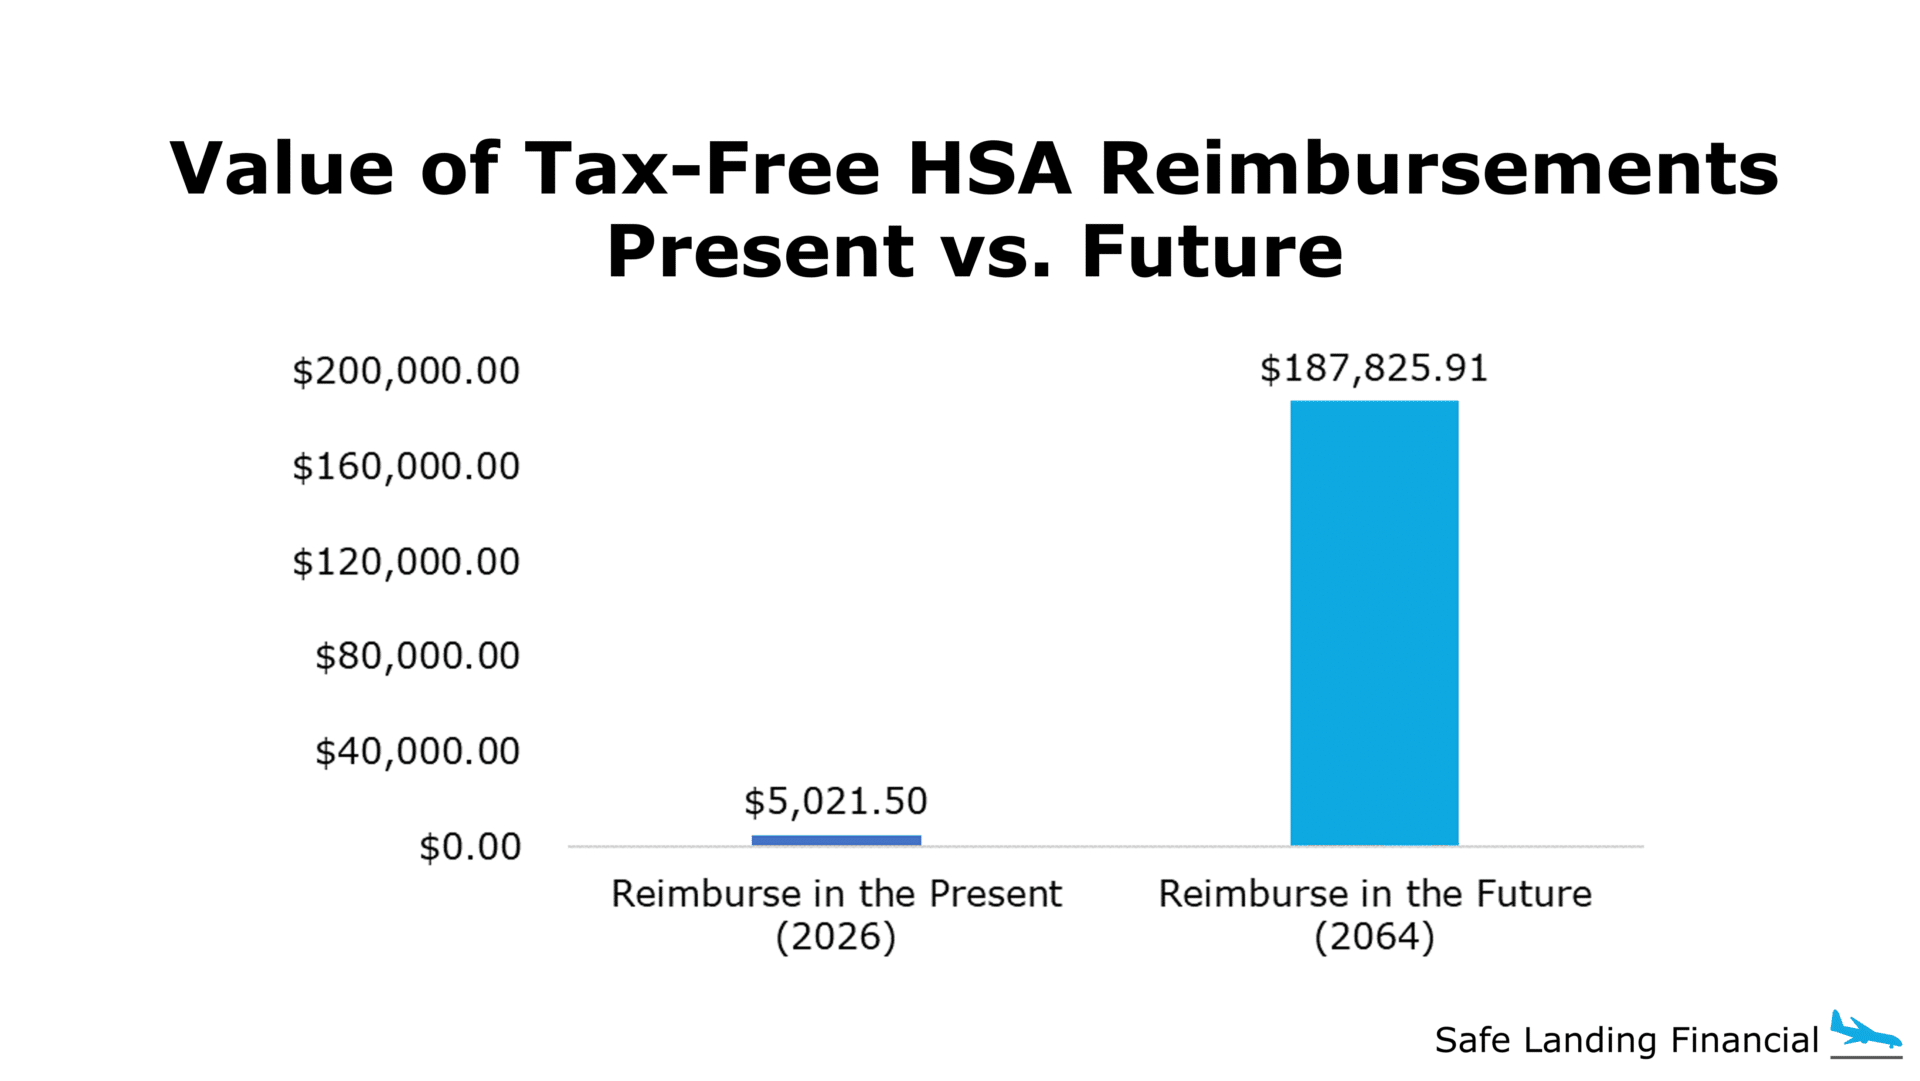 HSA Reimbursements Present vs. Future